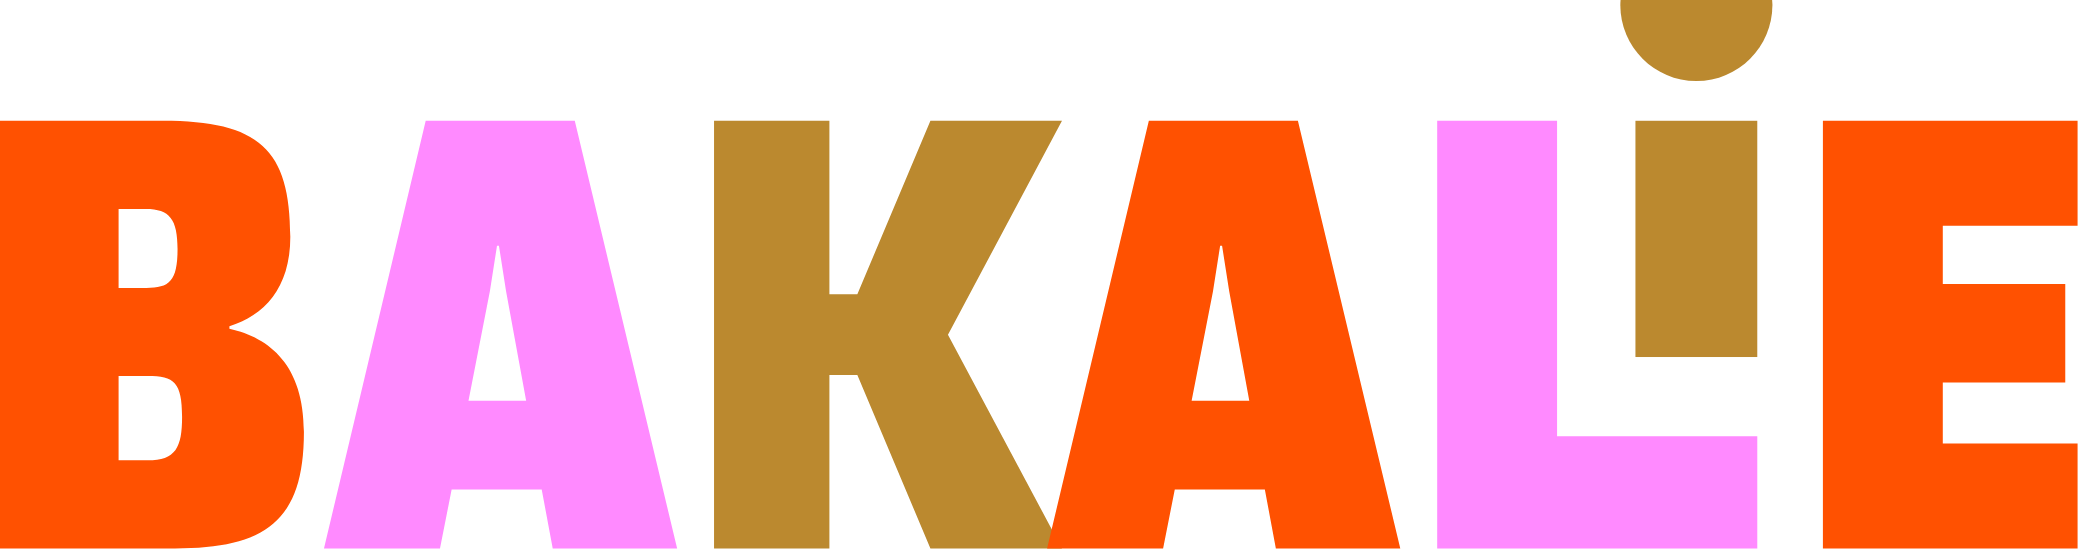 Bakalie logo